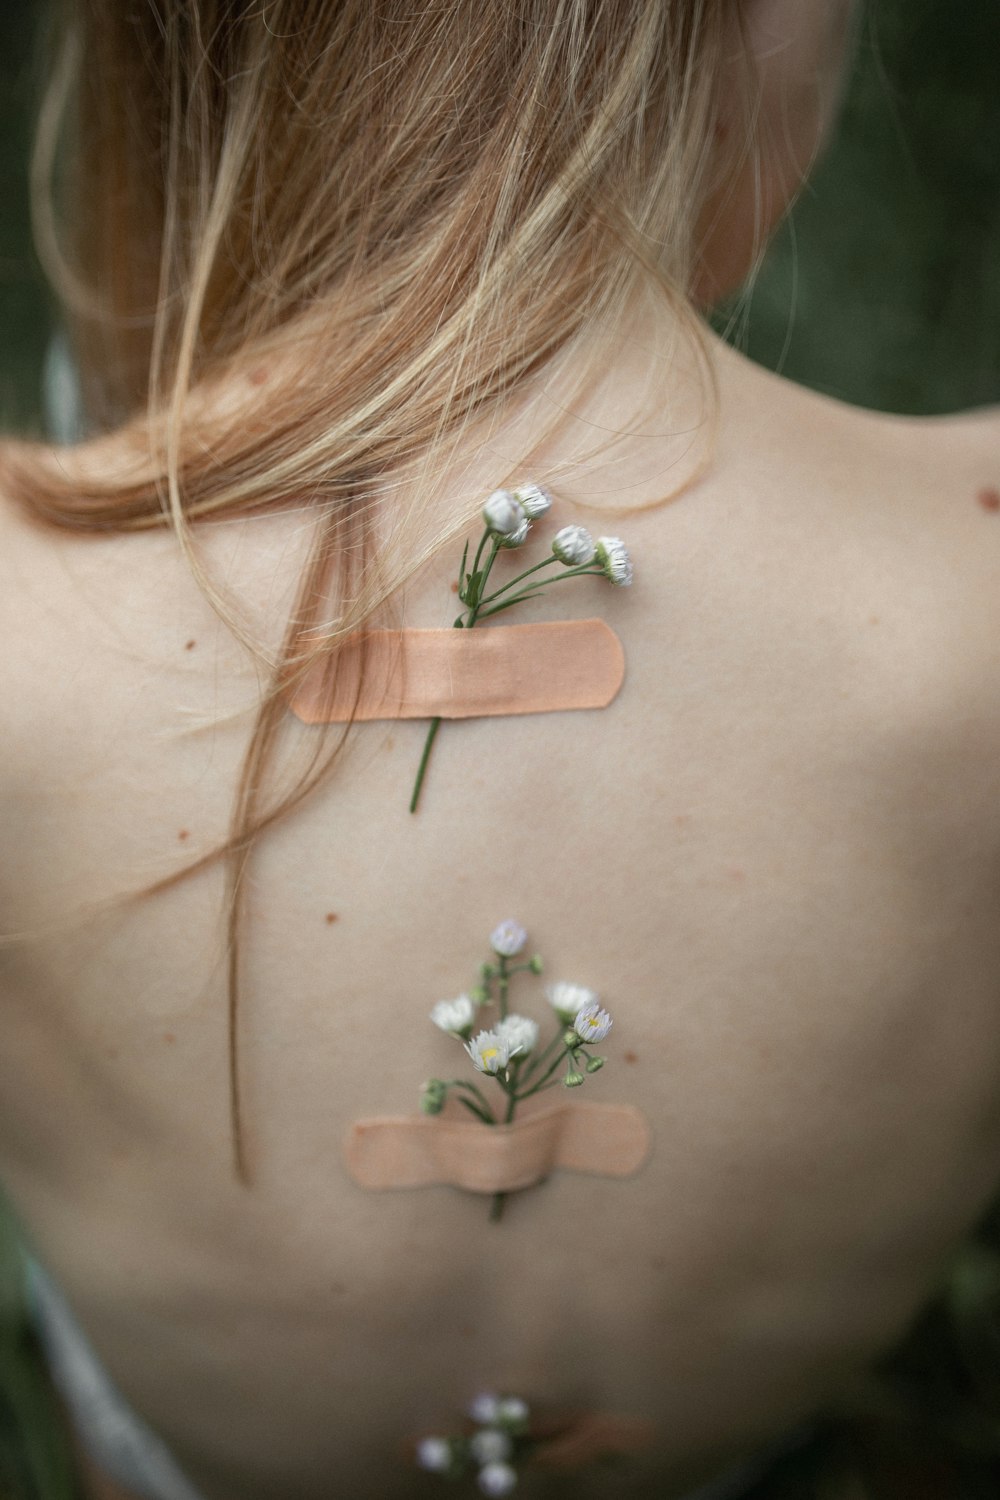 여자의 등에 붙어있는 흰 꽃잎